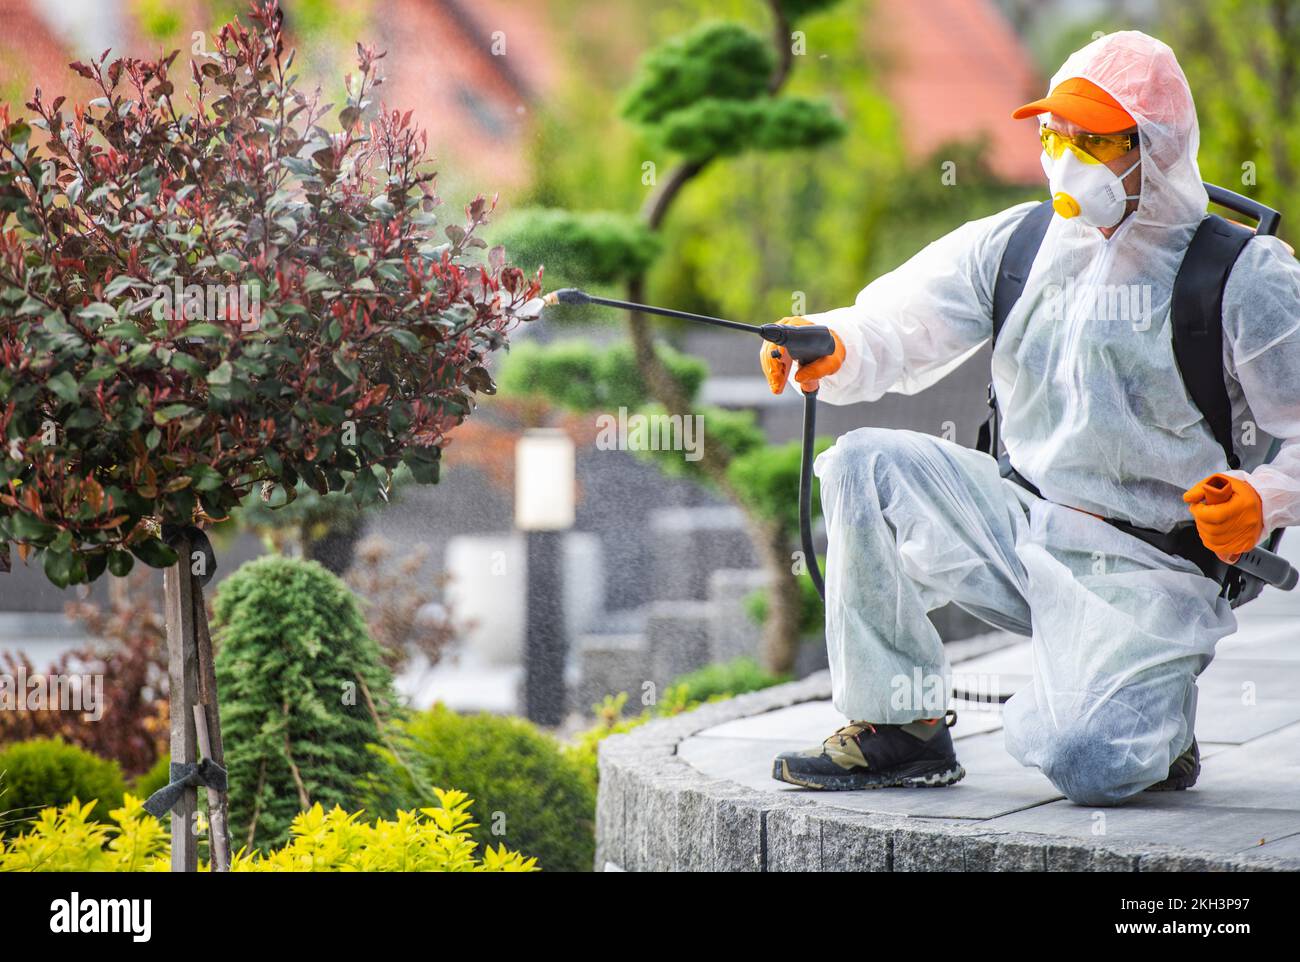 Jardinero Profesional en Máscara de Cara Completa y Seguridad Uniforme rociando Pesticidas en Árbol Decorativo en el Jardín. Tratamiento de Plagas-Control. Foto de stock